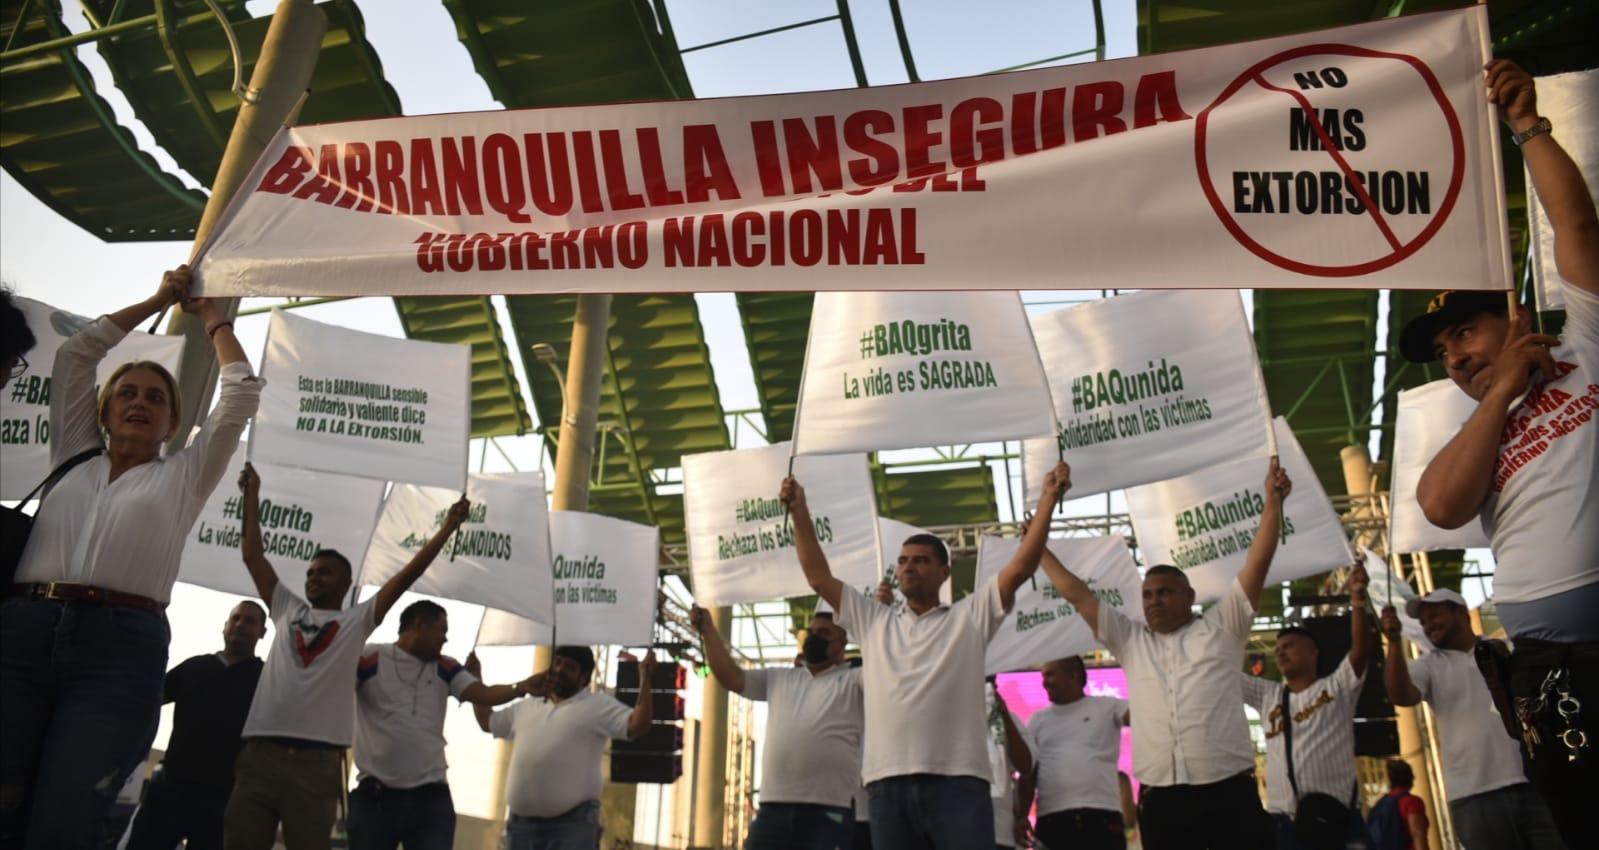 Protesta contra extorsión en Barranquilla.